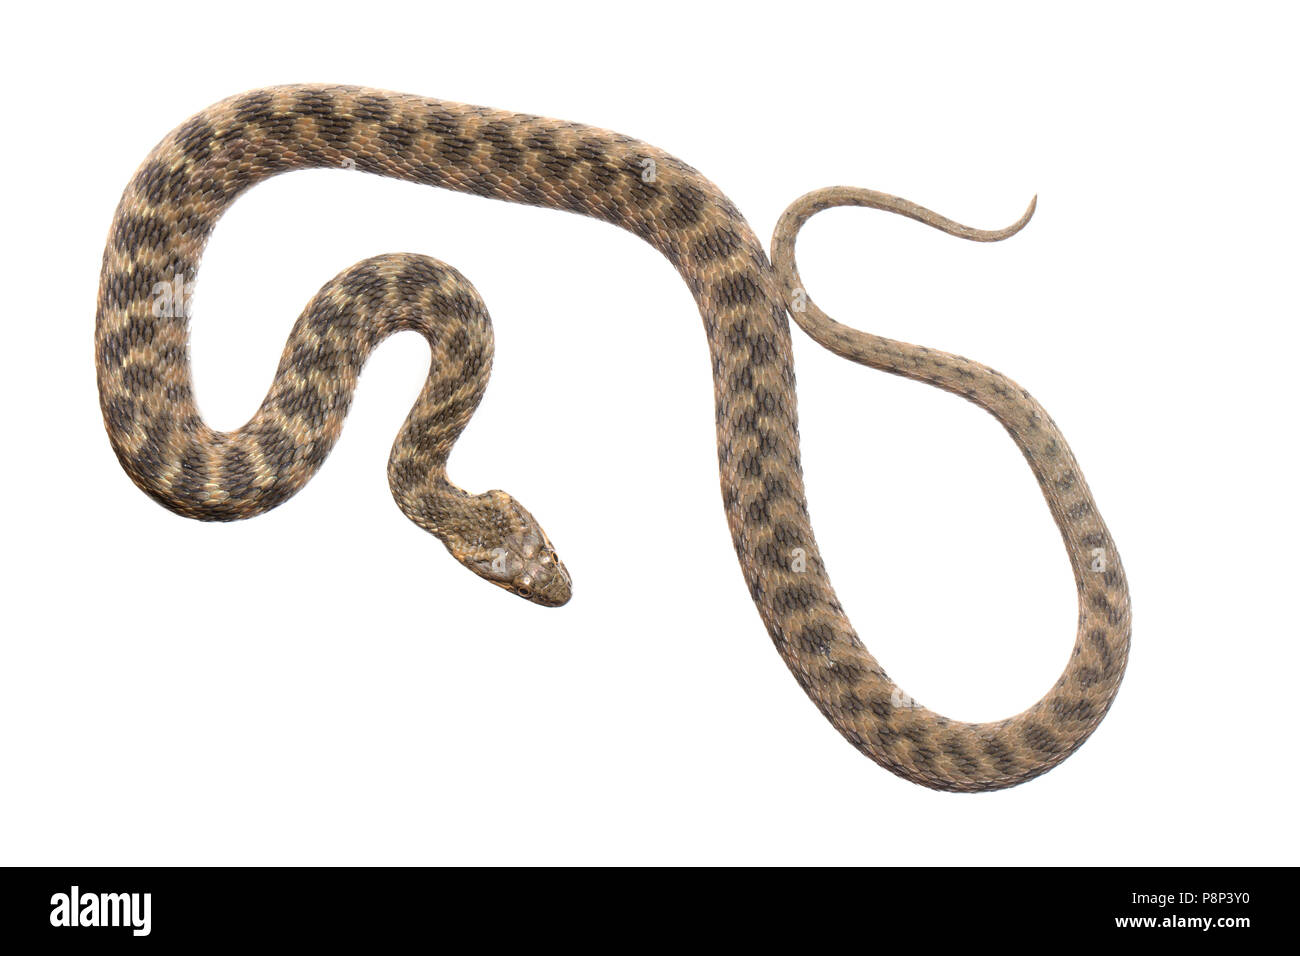 Viperine snake isolata contro uno sfondo bianco Foto Stock